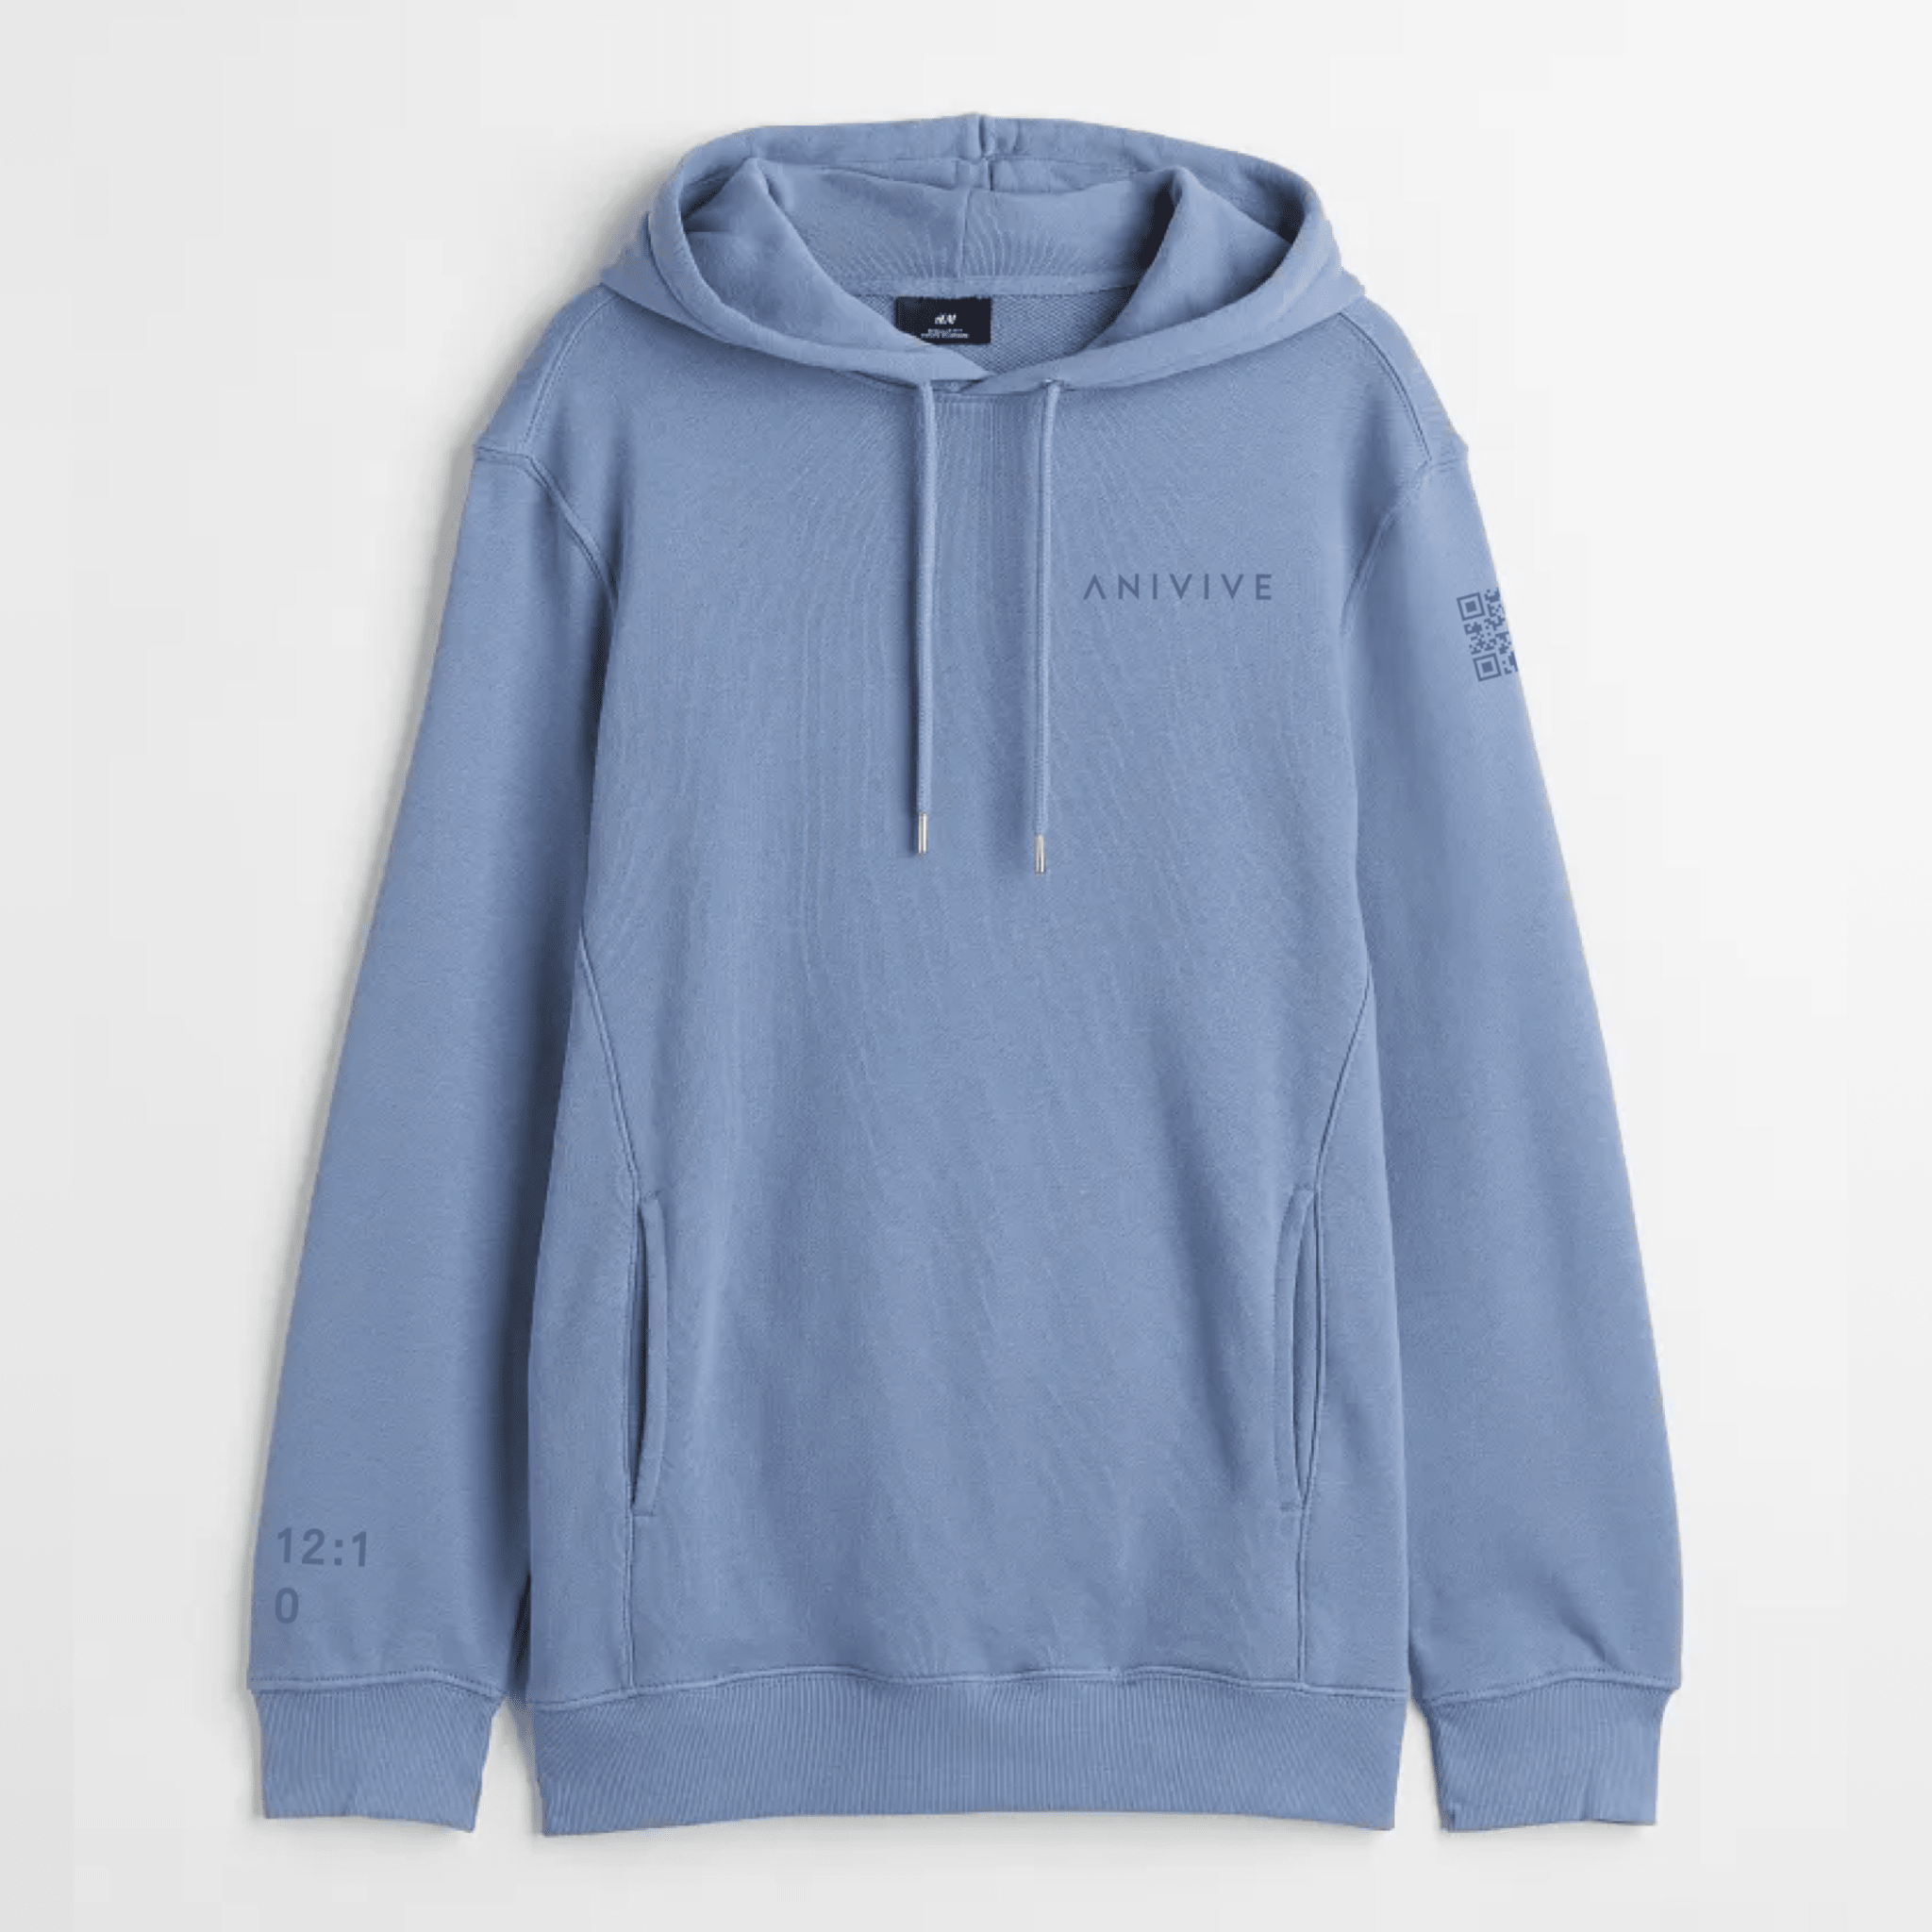 Anivive Hooded Sweatshirt